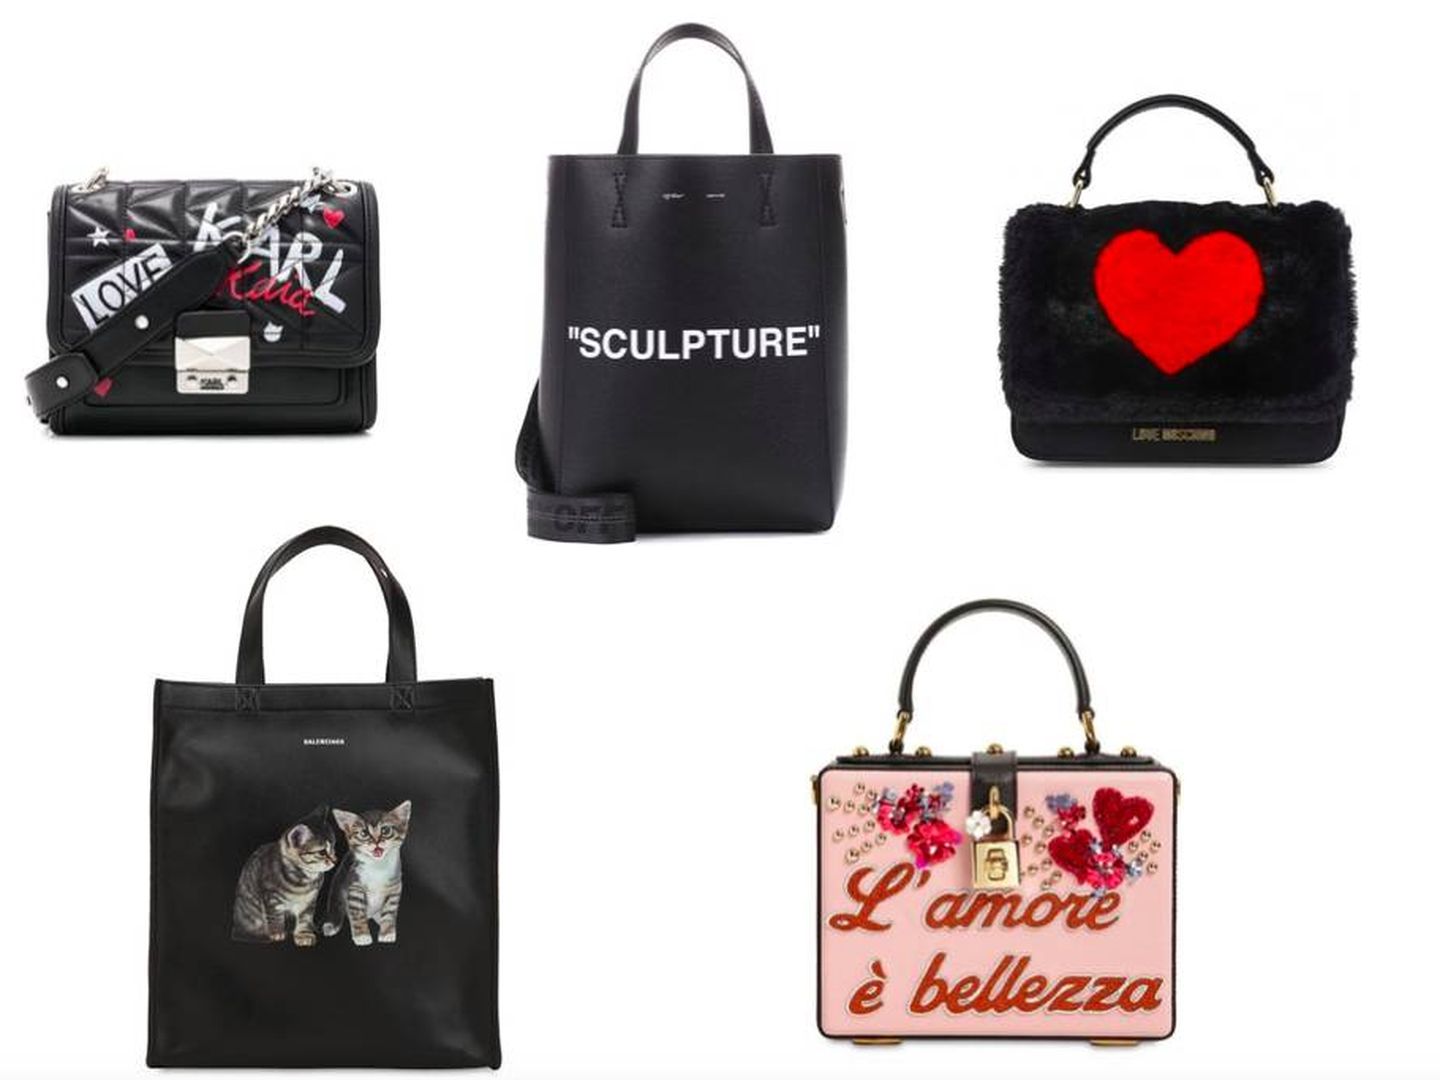 Con grafiti de Revolve (419,98 €), shopping-bag de Off-White (675 €), con corazón de Moschino (180 €), maxi con gatos de Balenciaga (1.250 €) y doctor bag de Dolce & Gabbana (1.950 €).